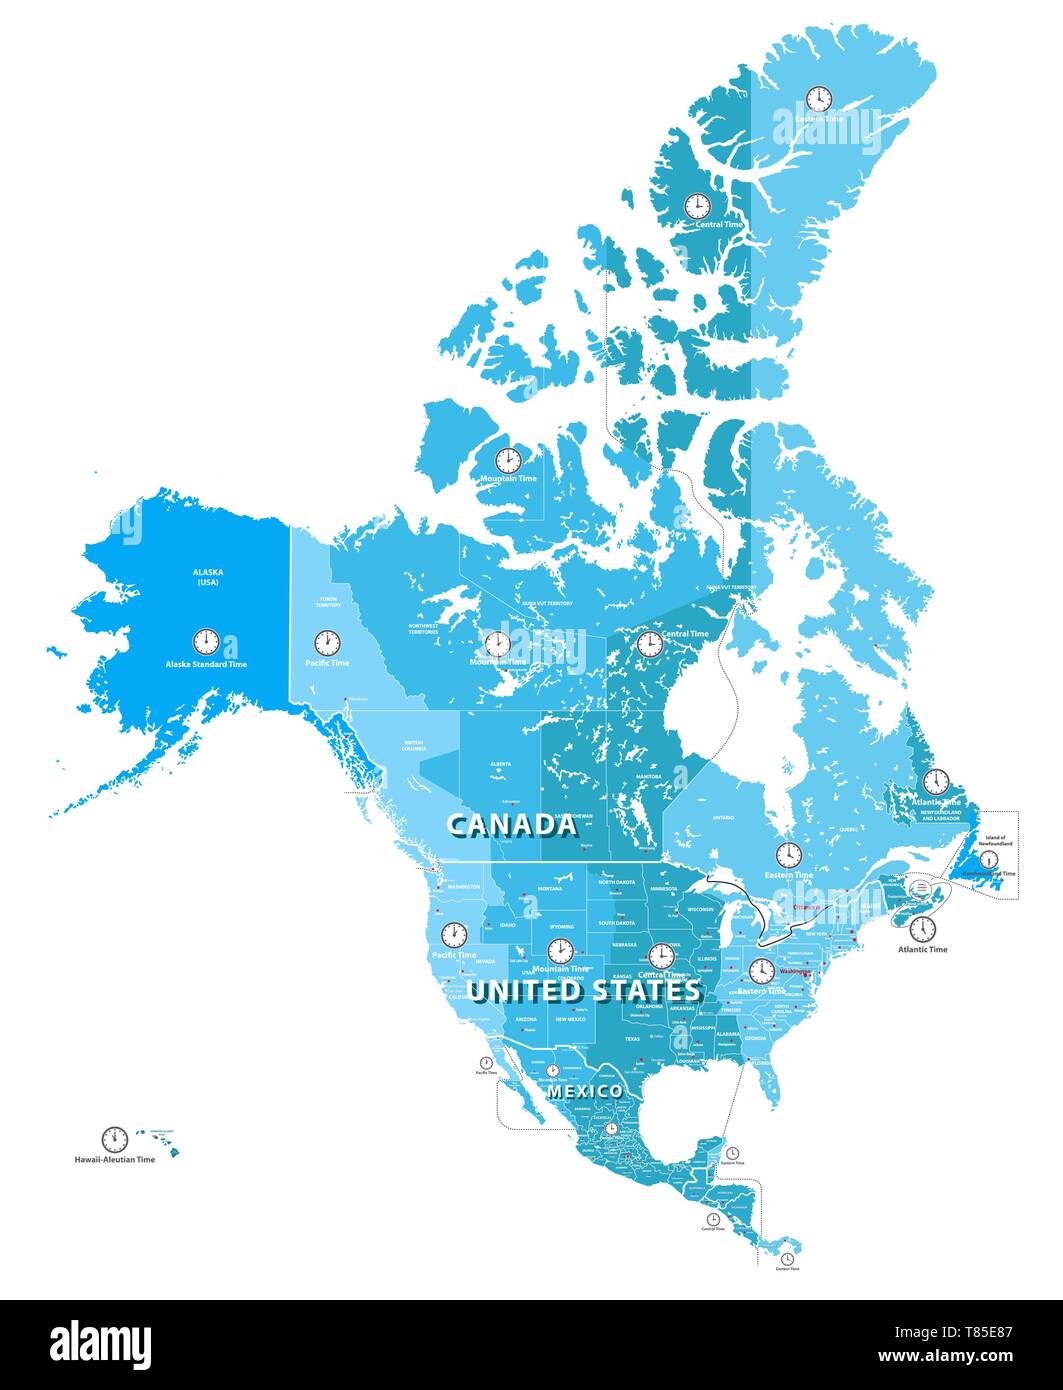 Détaillées temps élevé en Amérique du Nord carte des zones. Tous les éléments séparés et étiquetés en couches amovibles Illustration de Vecteur